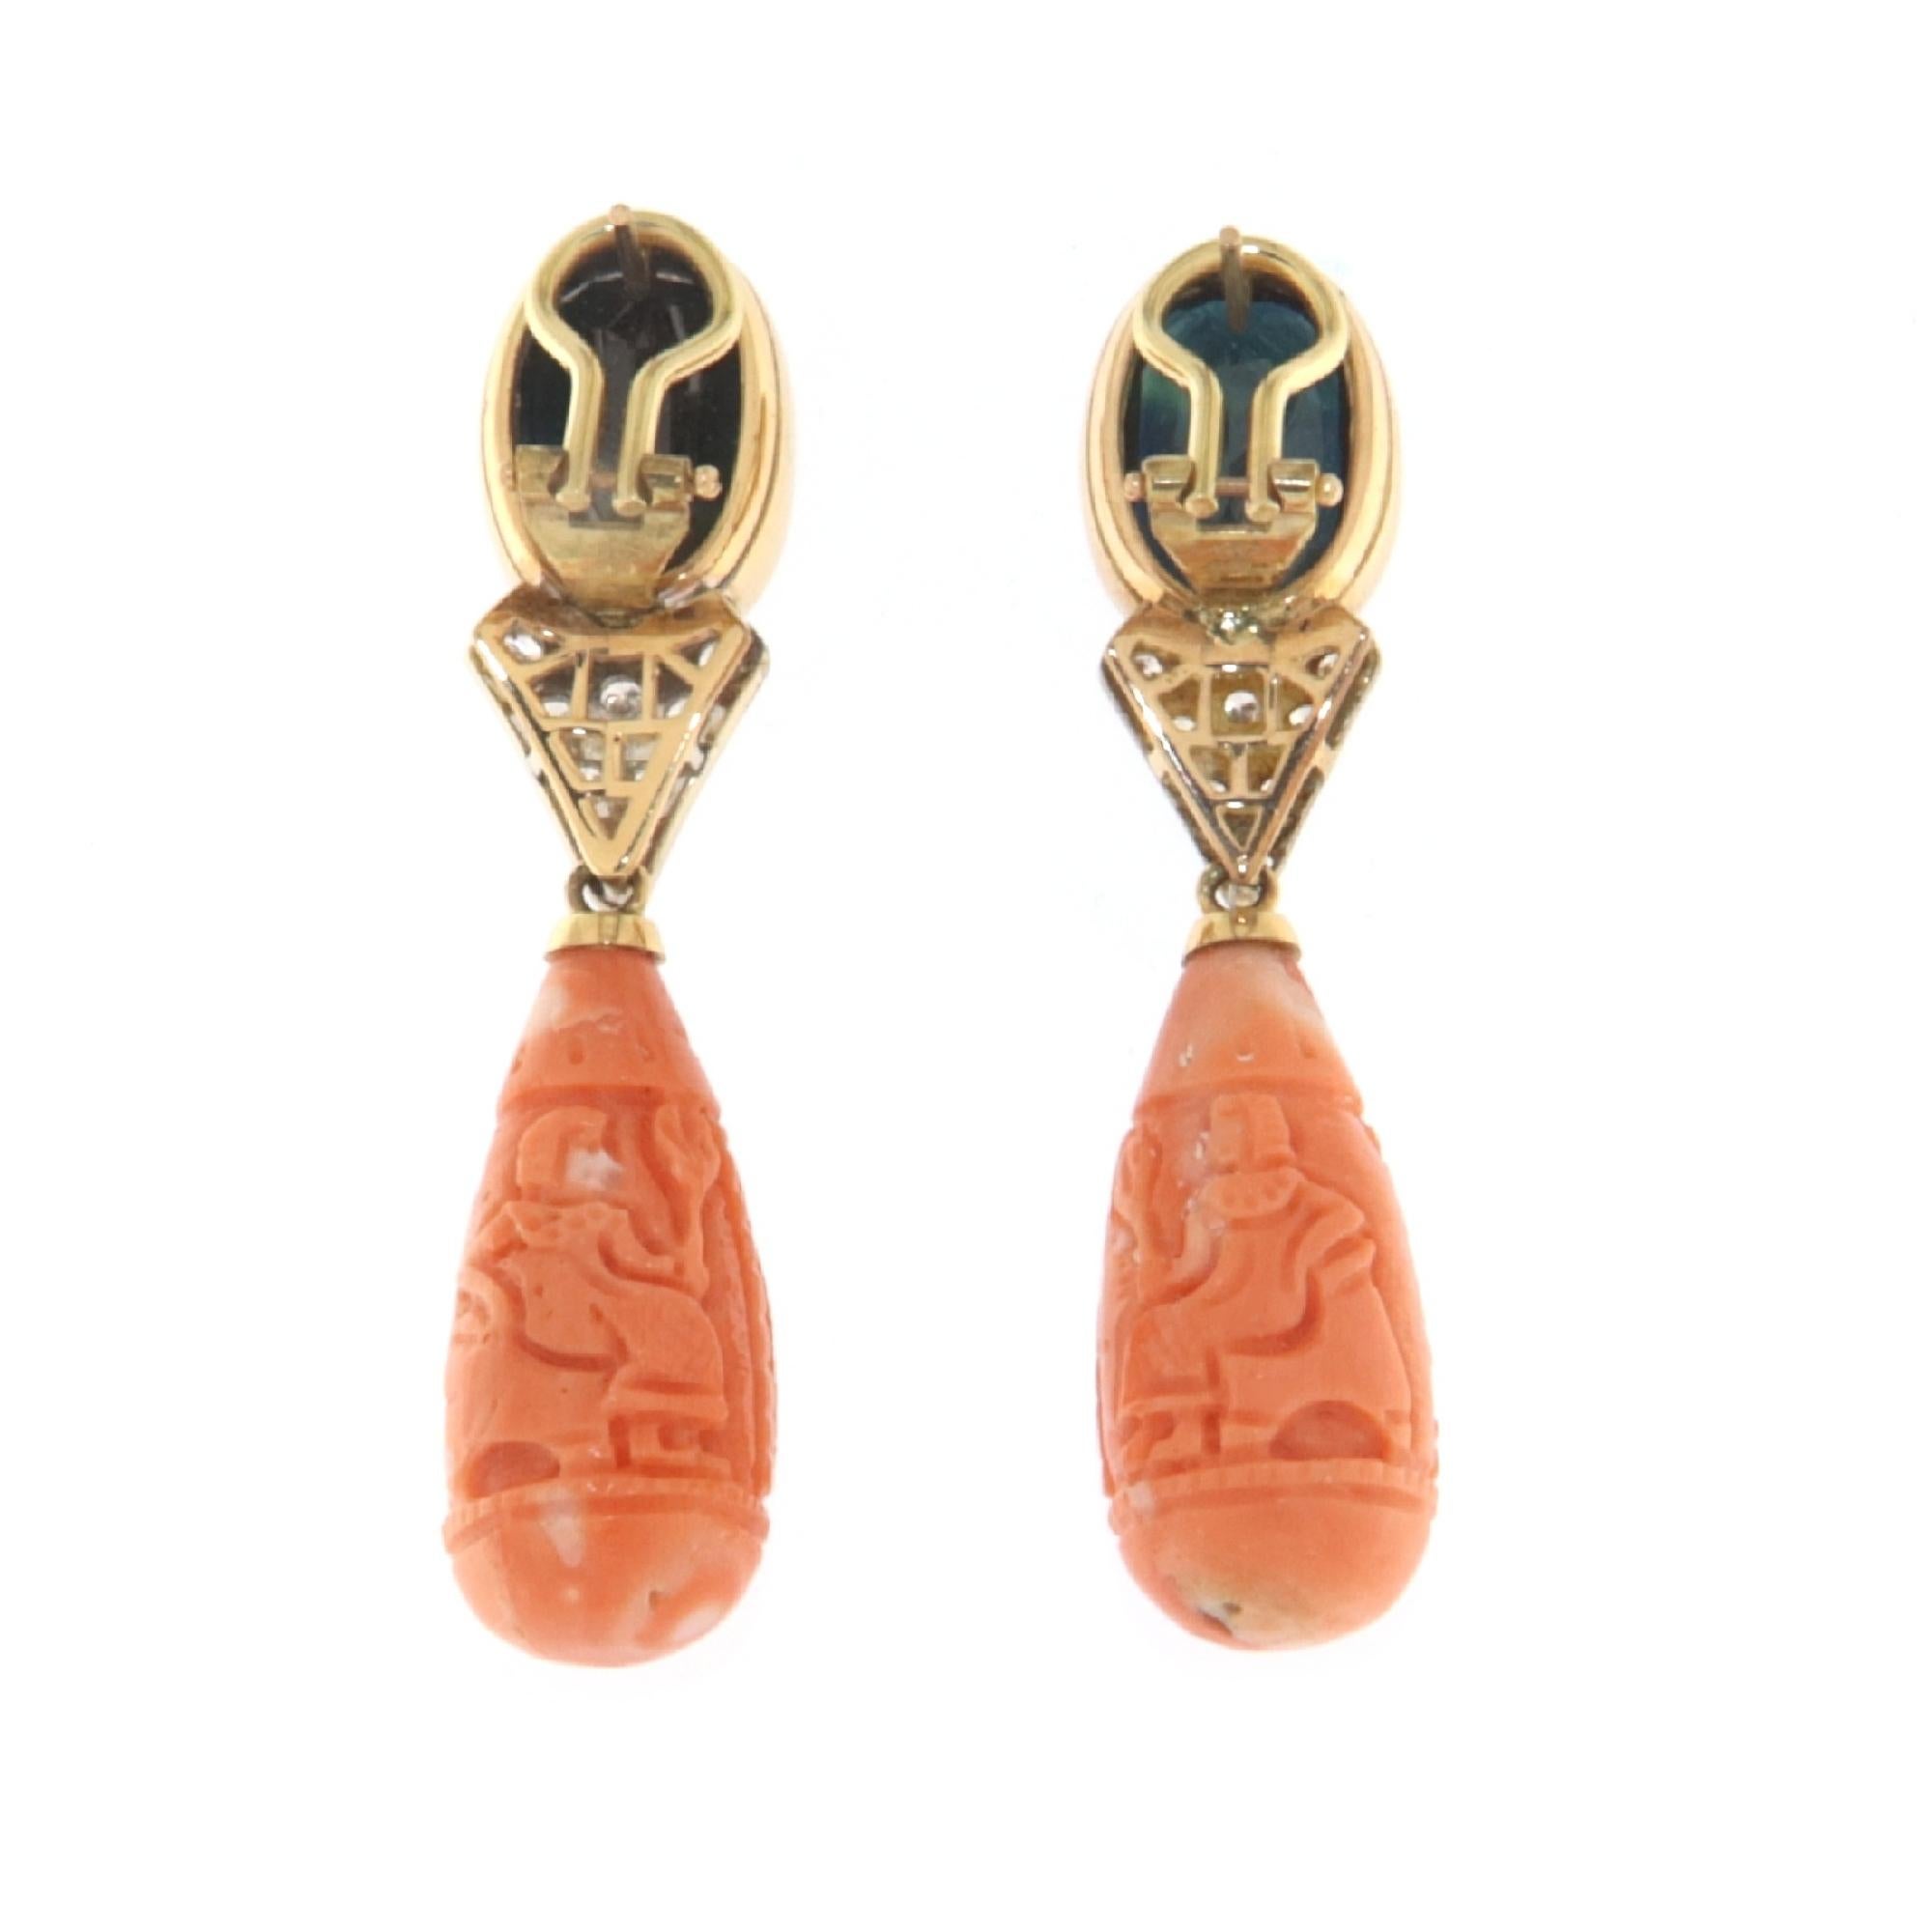 Diese Ohrringe aus 18-karätigem Gelbgold verkörpern die Eleganz feiner Handwerkskunst und sind ein Zeugnis für zeitlosen Stil und Luxus. Jeder Ohrring besteht aus einem glänzenden ovalen Saphir, der in eine Lünette aus warmem Gelbgold gefasst ist,